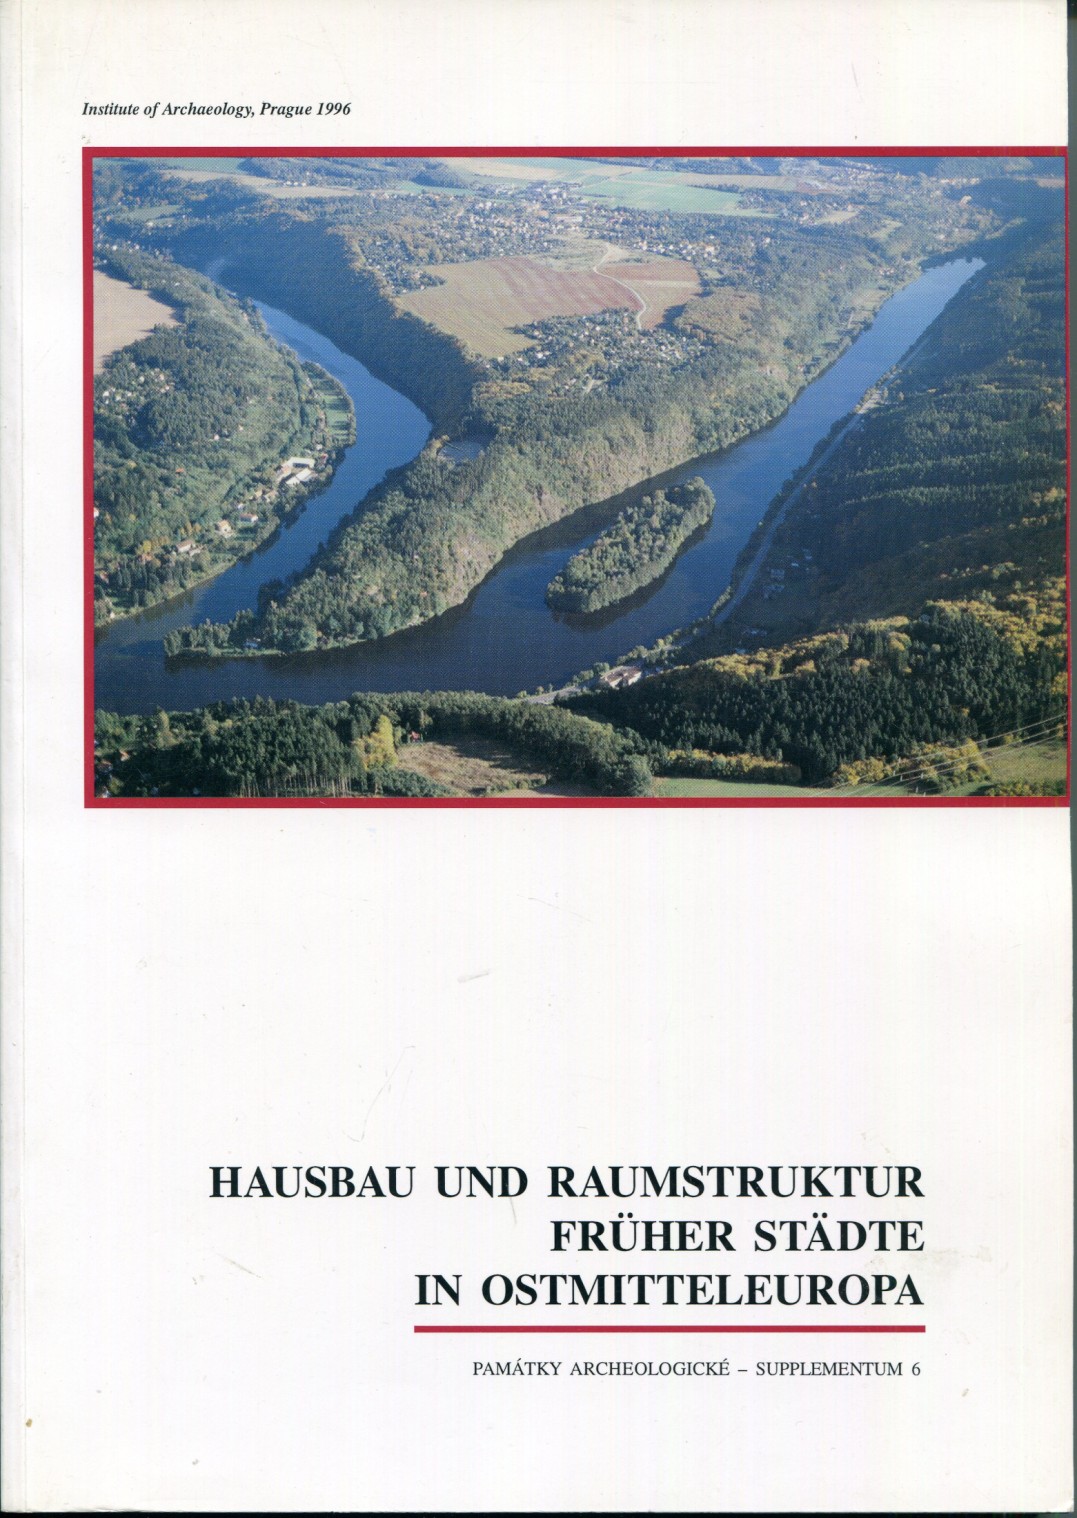 Hausbau und Raumstruktur früher Städte in Ostmitteleuropa [= Pamatky archeologicke - Supplementum 6] - Brachmann, Hansjürgen - Klapste, Jan (eds.)